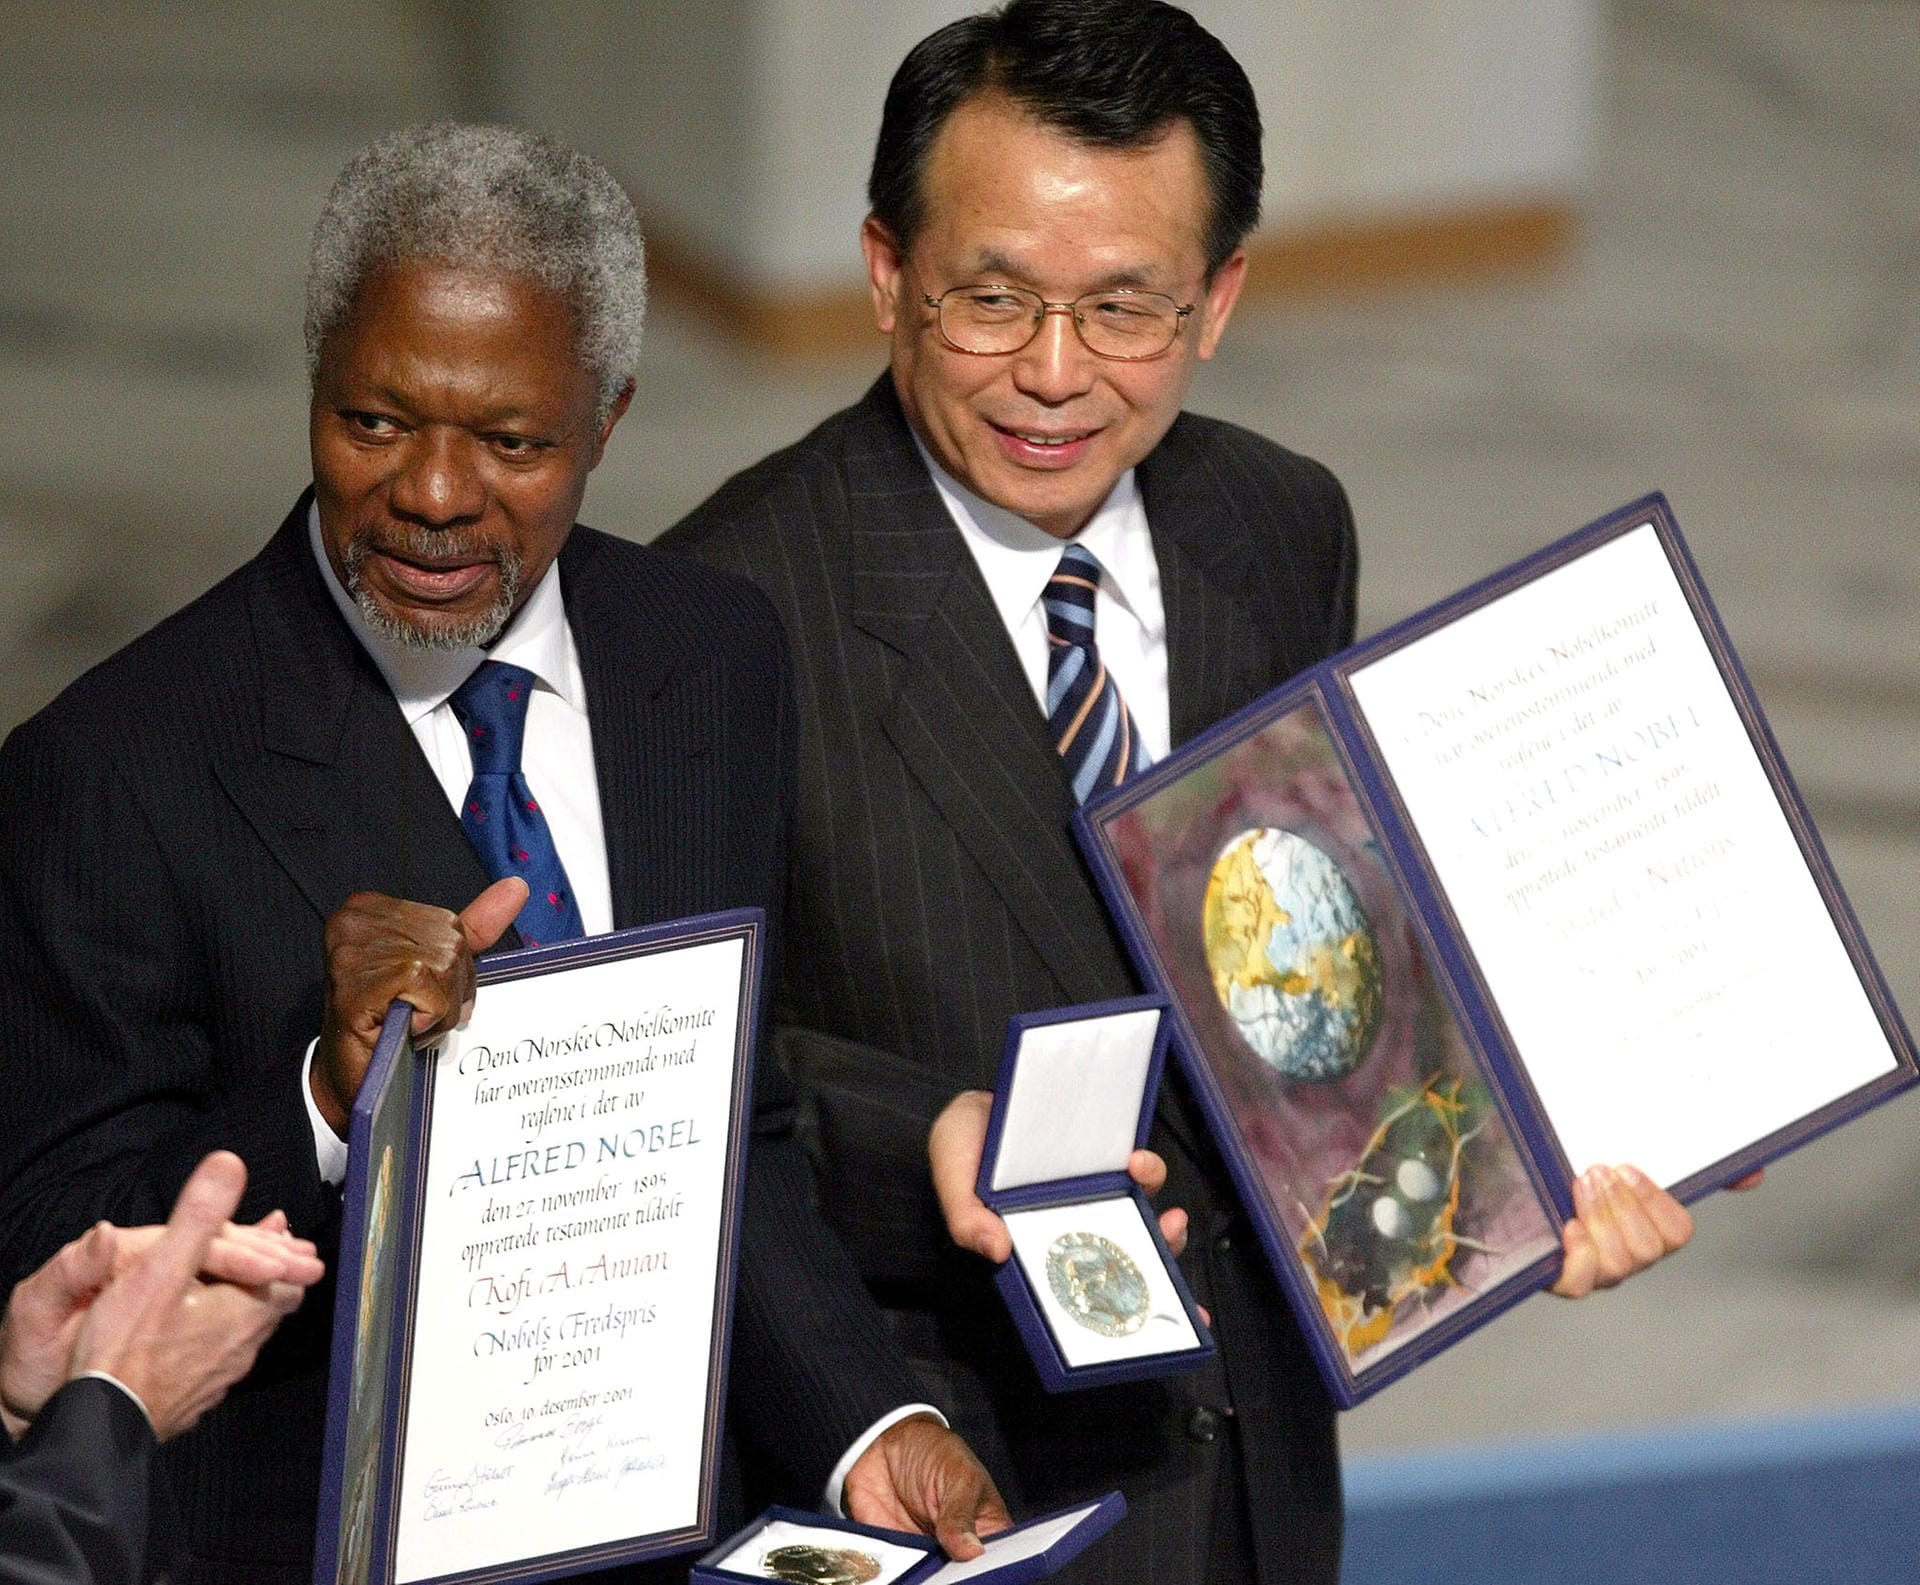 2001 teilten sich Kofi Annan, ein ghanaischer Diplomat (links, † 2018) und die Vereinten Nationen den Friedensnobelpreis. Sie erhielten die Auszeichnung für ihren Einsatz für eine besser organisierte und friedlichere Welt. Der koreanische Außenminister und Präsident der Generalversammlung (r), Han Seung Soo, hält hier den Preis in der Hand.